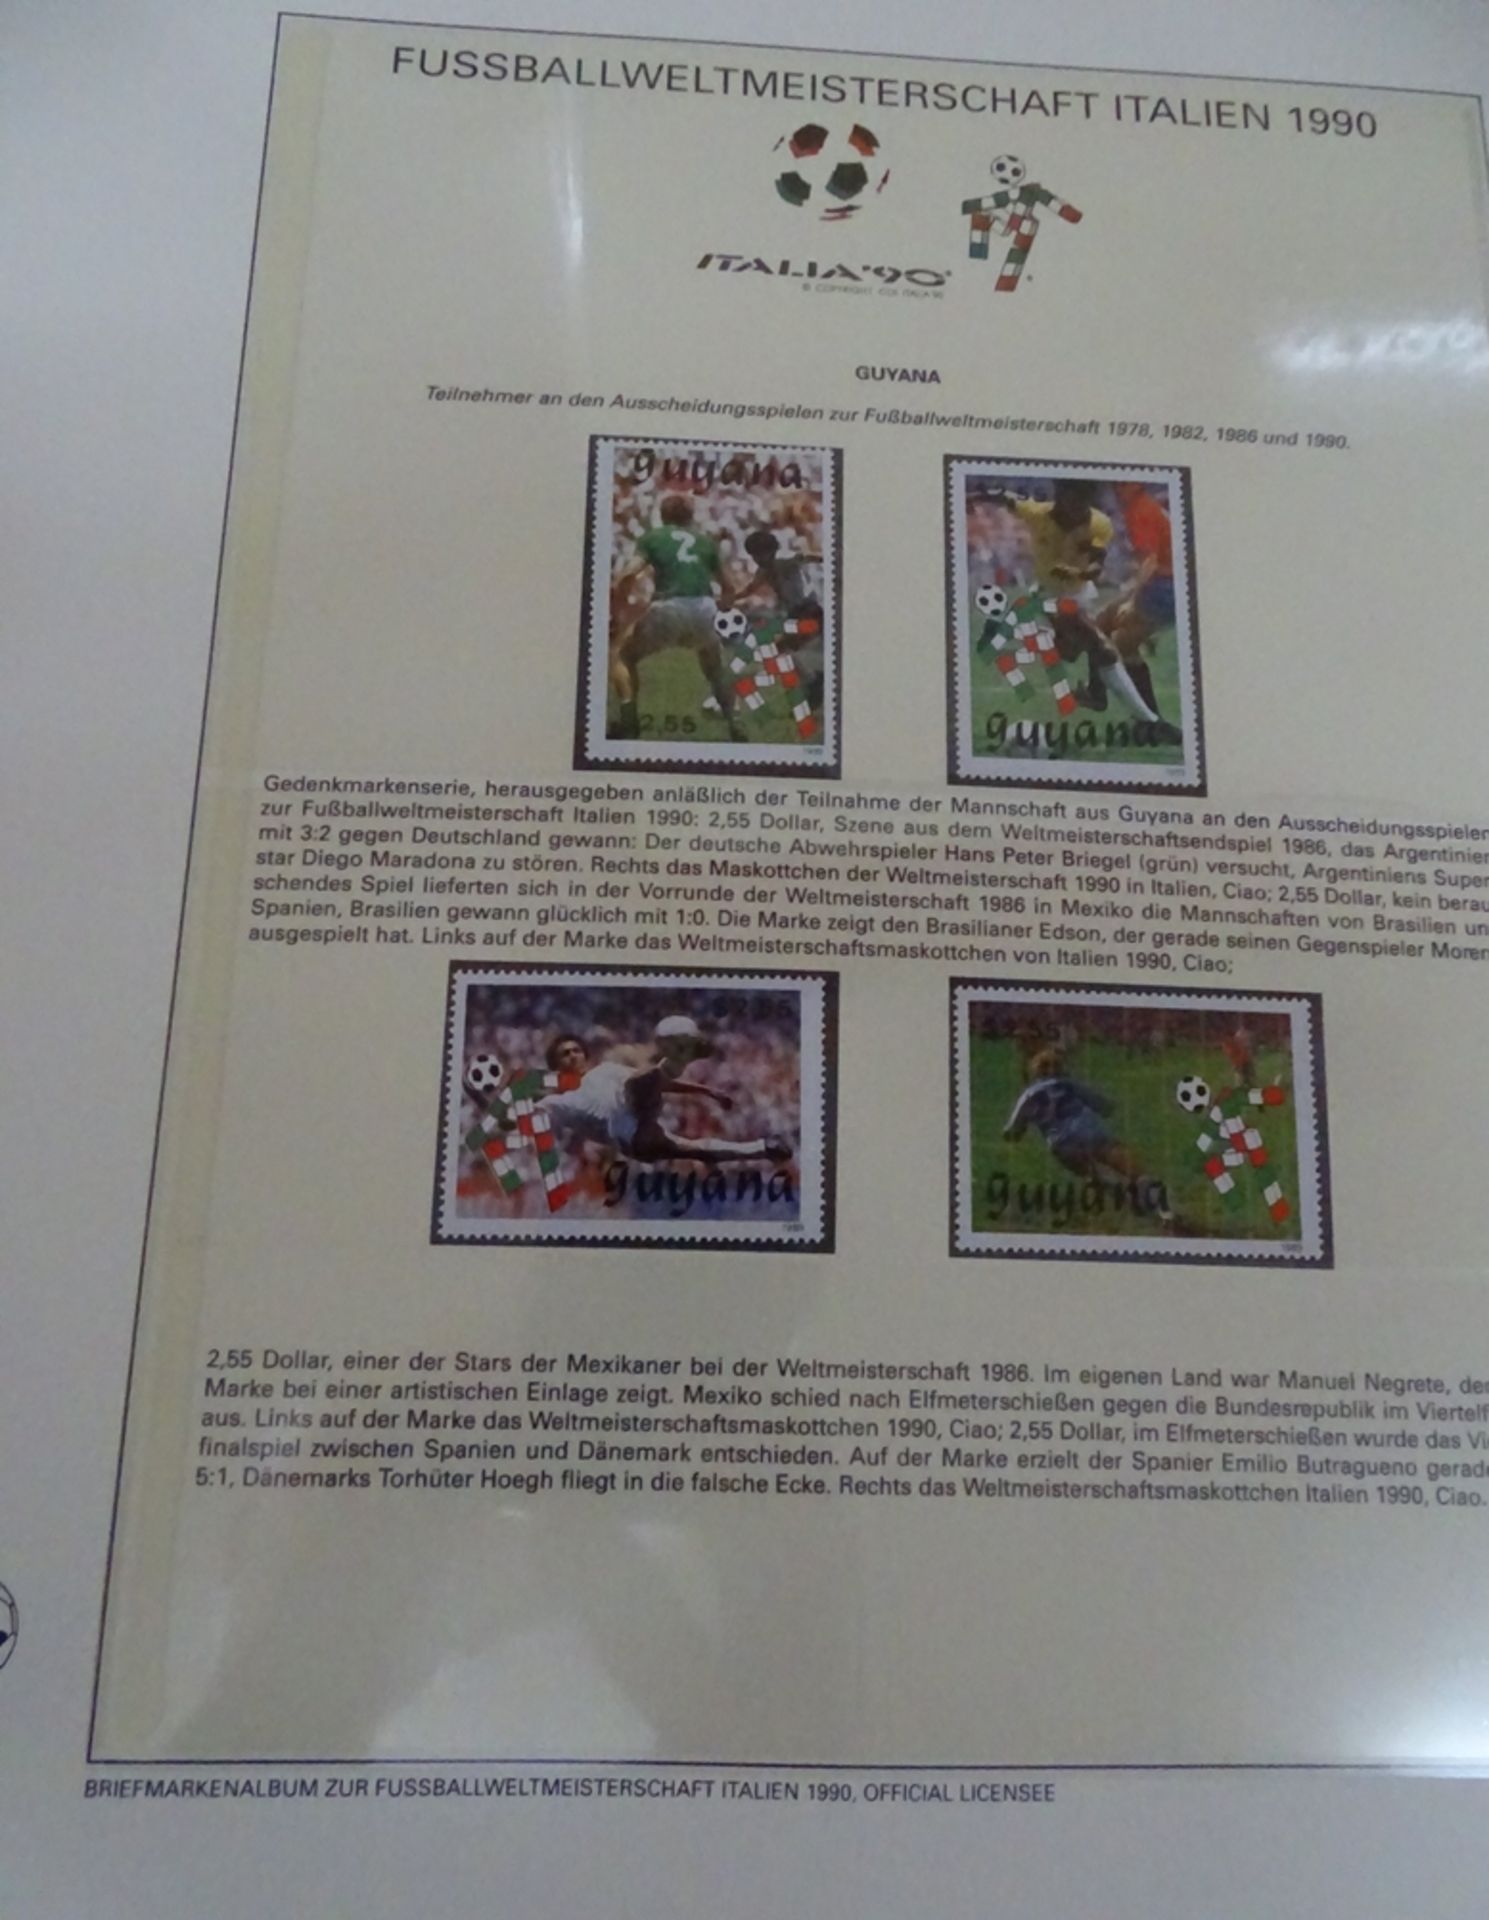 4x lomplette Linbder Ordner  "Italia 90" Briefmarkenalbum zur Fussball- Weltmeisterschaft, official - Bild 3 aus 13